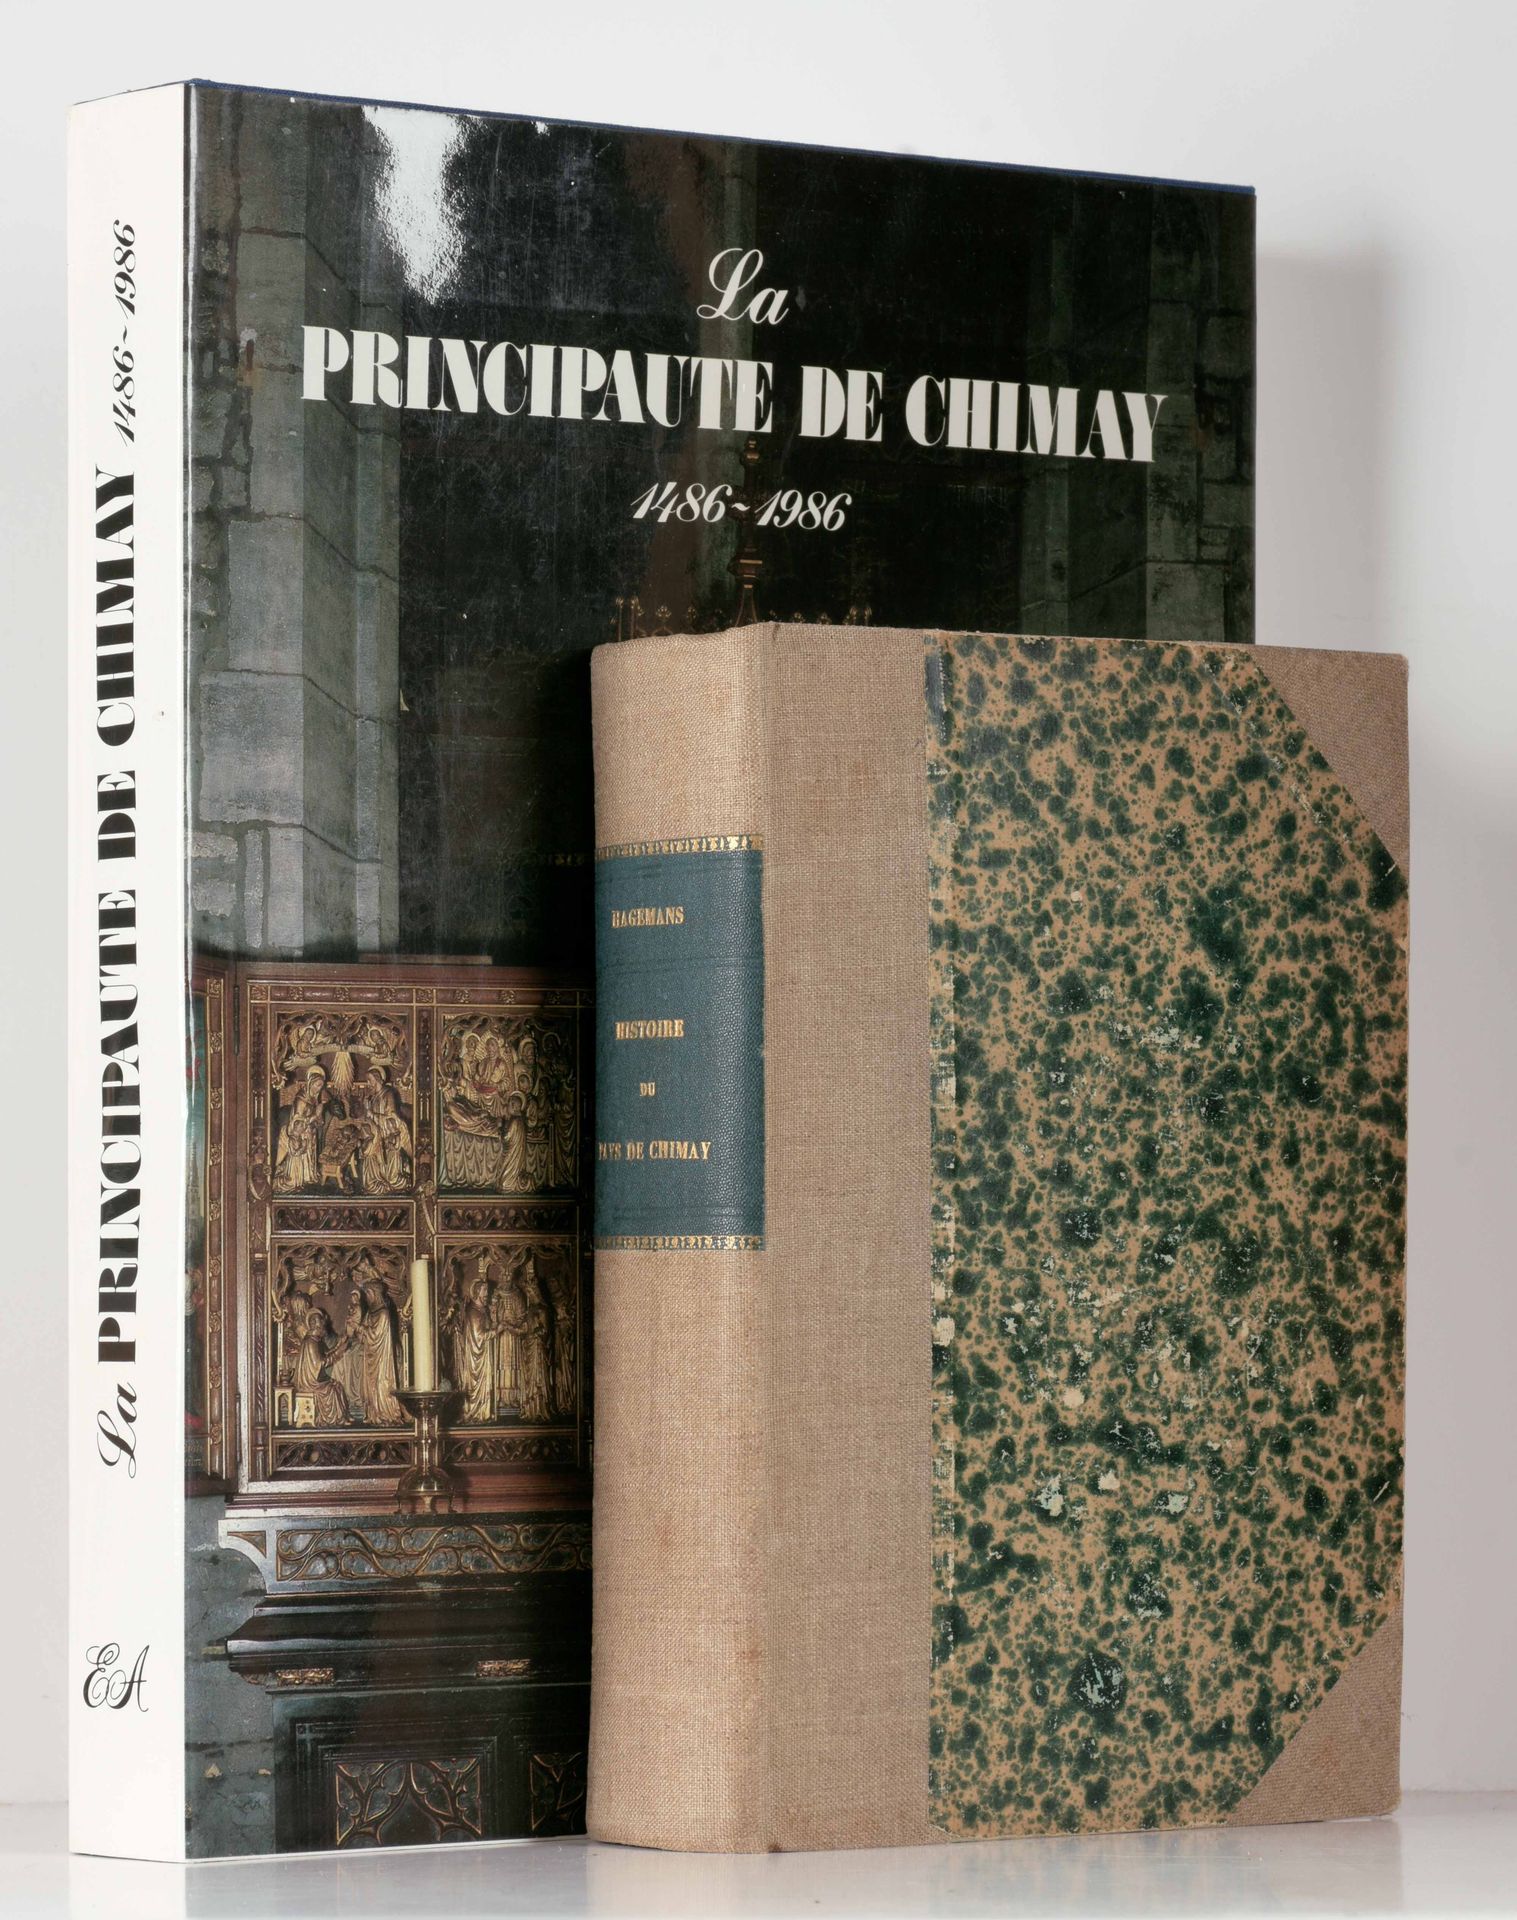 HAGEMANS, G. Historia del país de Chimay

In-8°, xvi - 599 pp, ilustrado con 3 l&hellip;